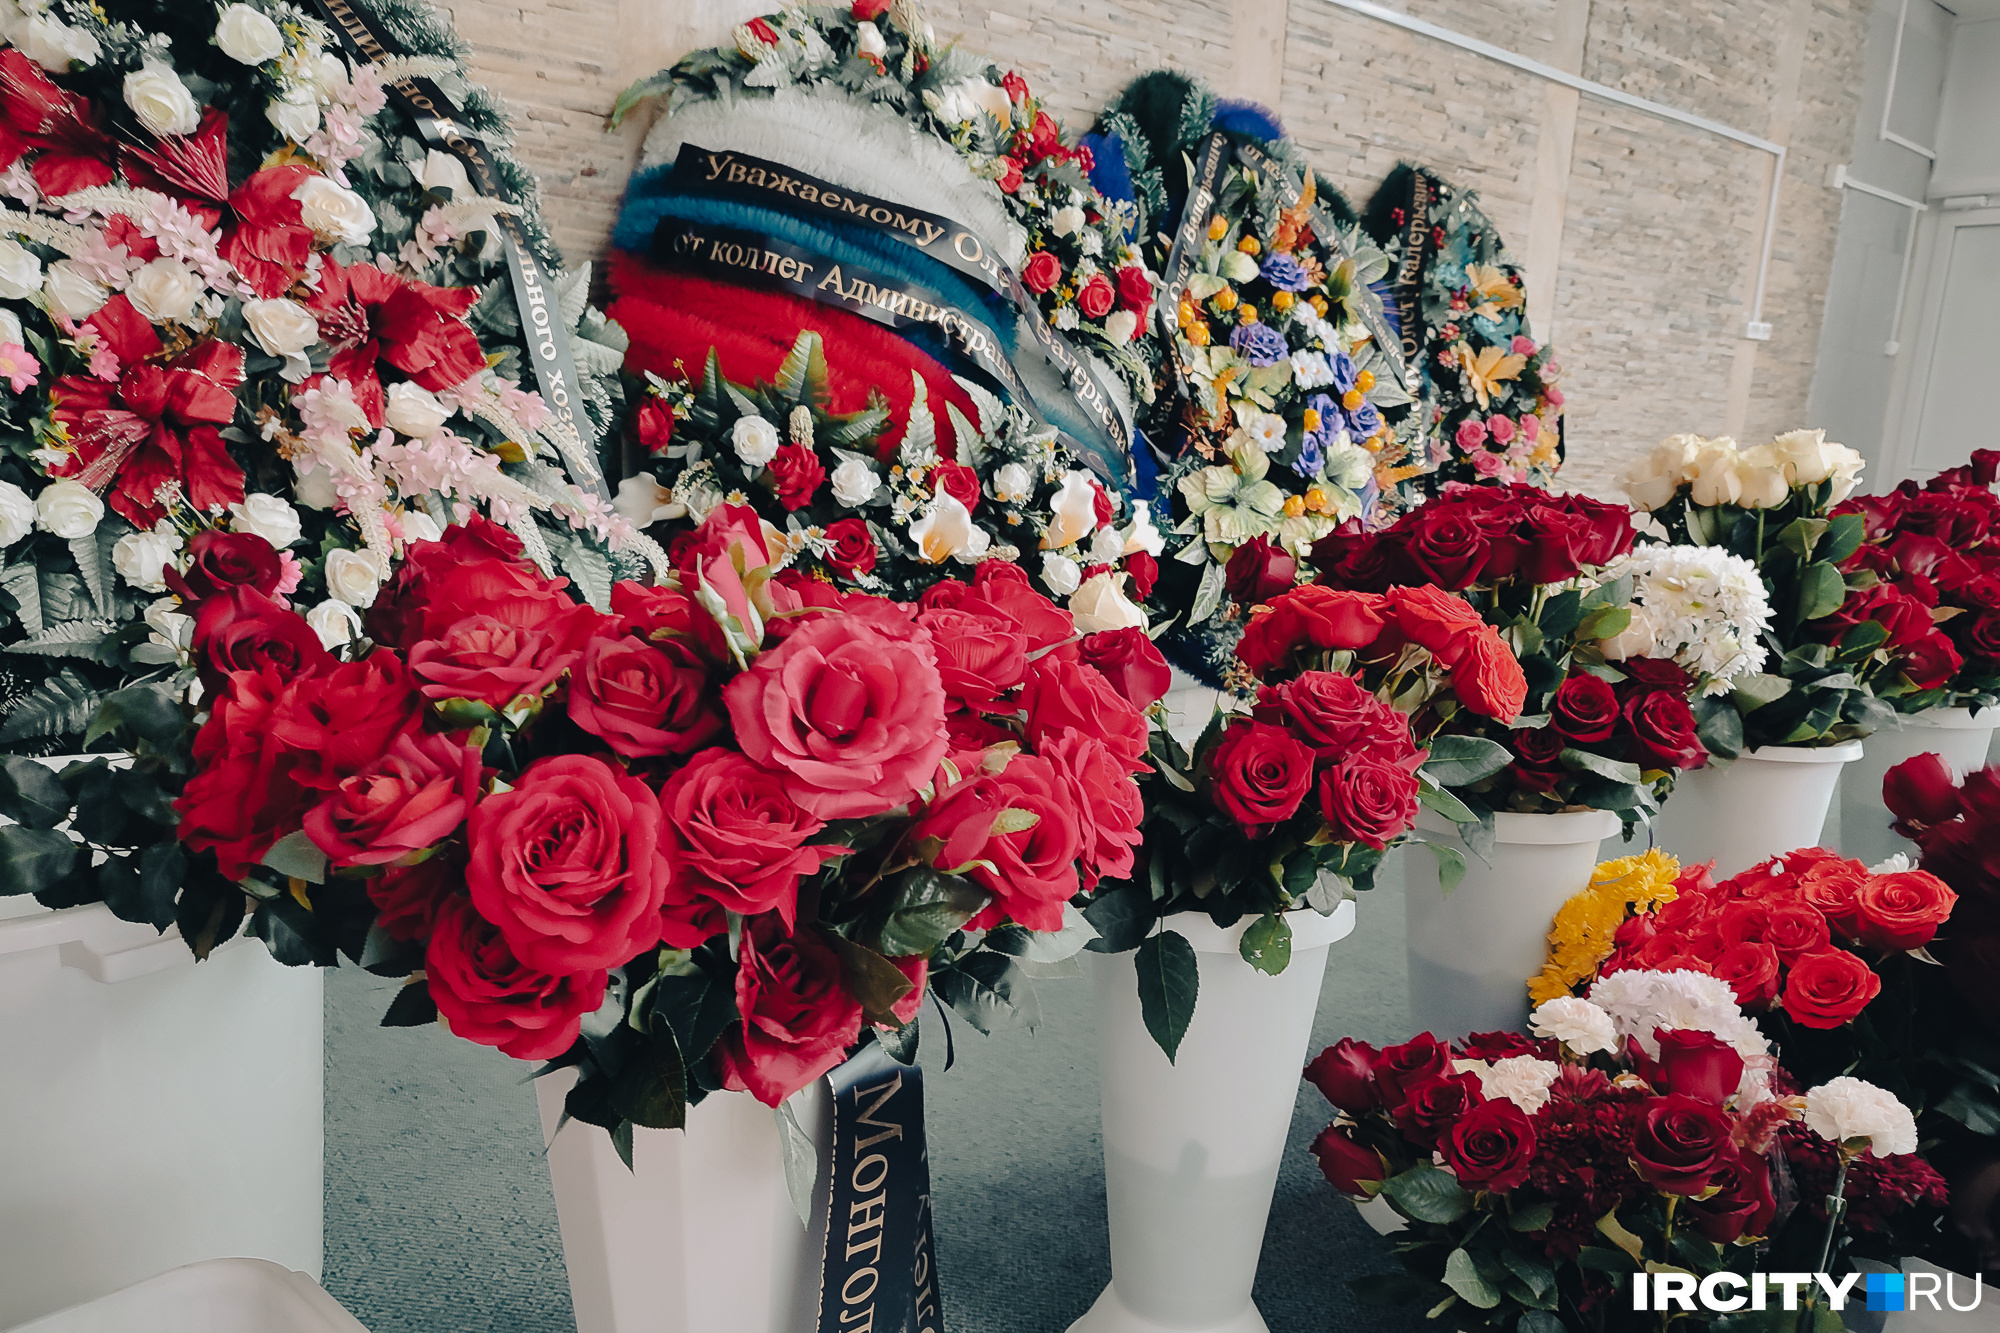 Периодически цветы переносили с постамента у гроба в вазы у стены